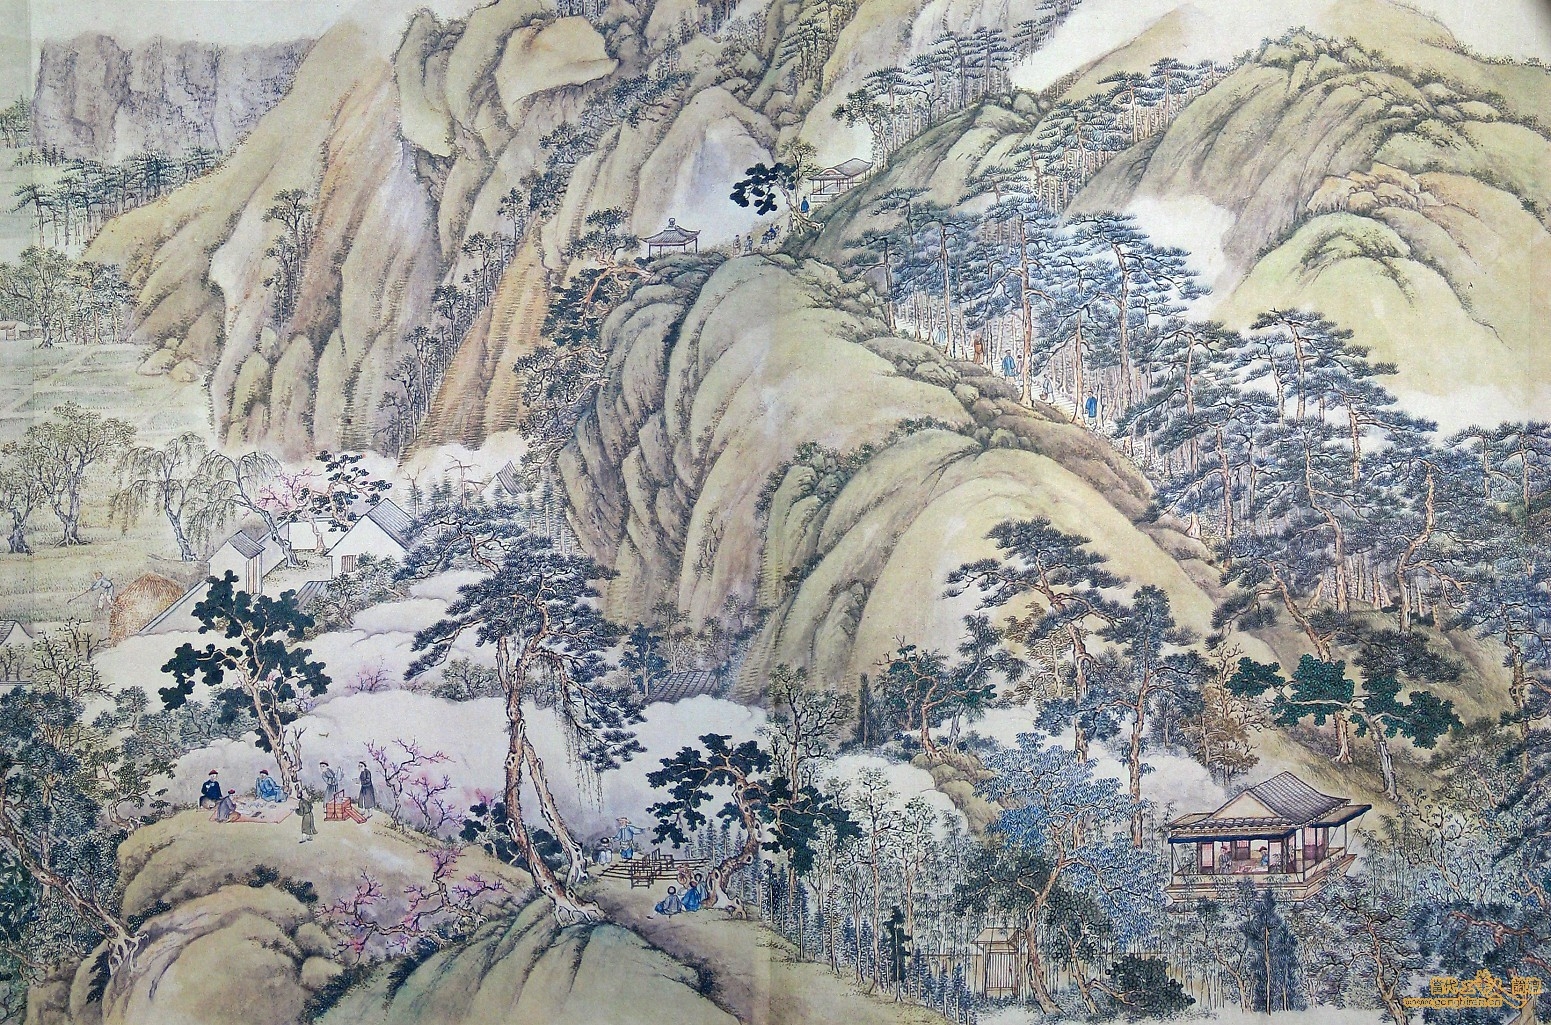 清代徐揚所繪的《姑蘇繁華圖》，左下角可見僮僕拿著提盒跟隨文人遊歷山水的樣貌。 資料來源│維基百科 